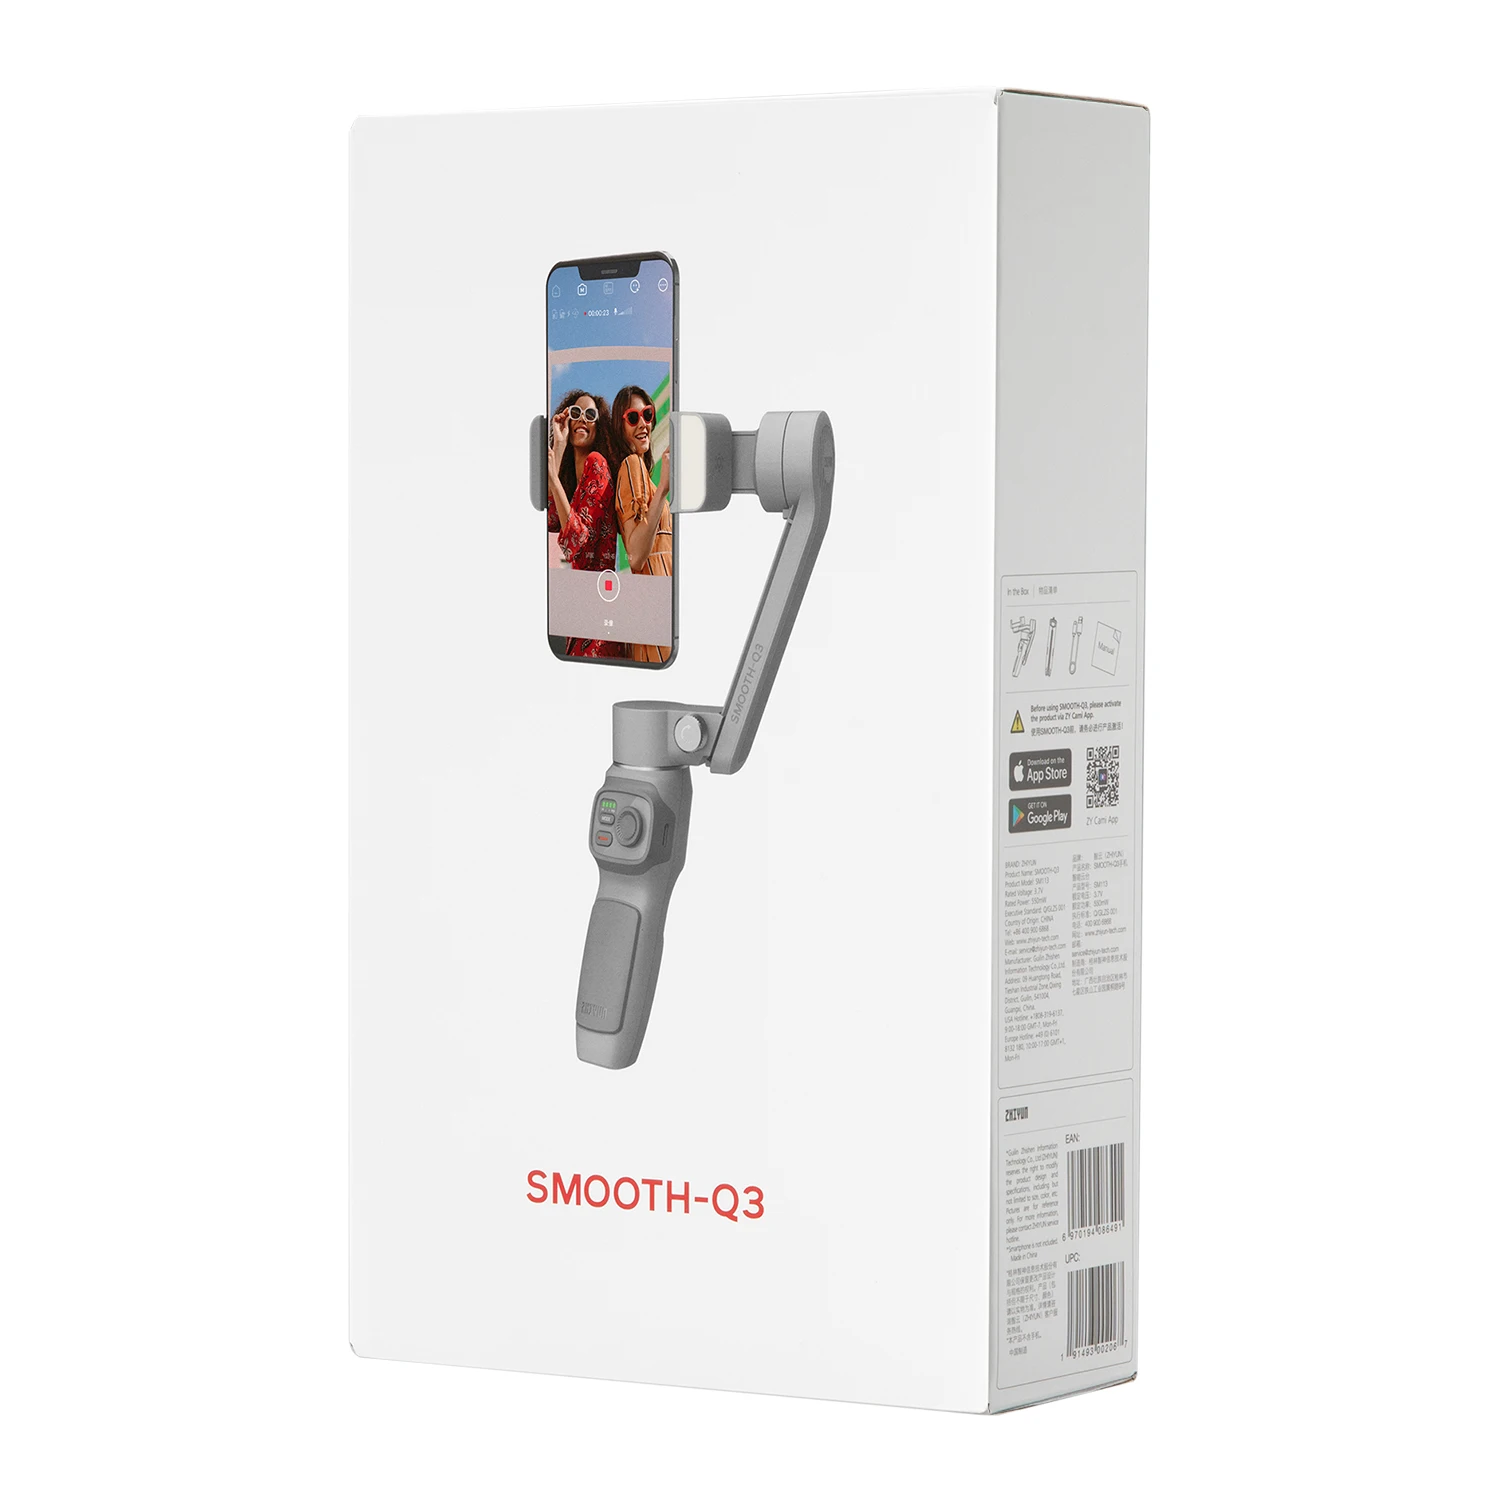 ZHIYUN официальный гладкой SMOOTH Q3 смартфонов карданный 3-осевой карманный телефон